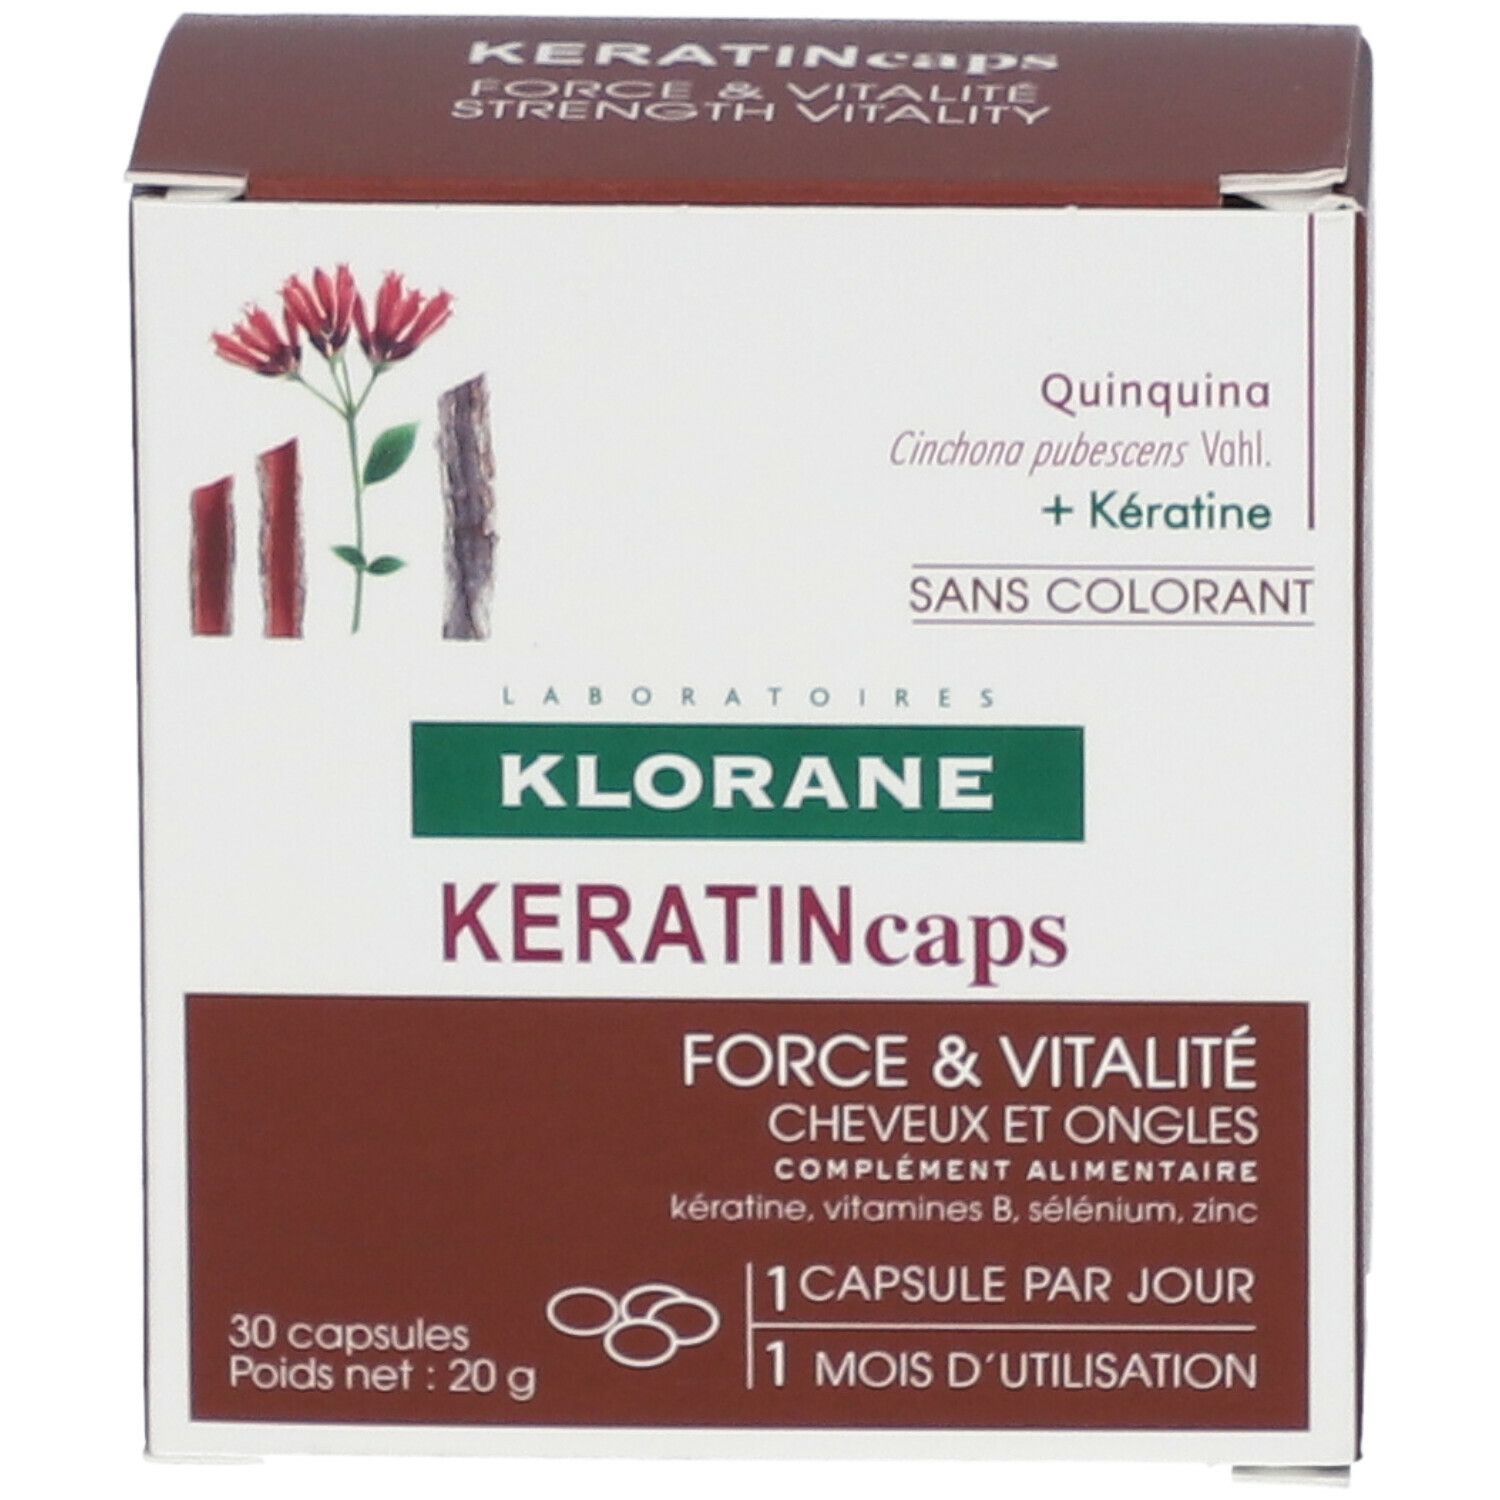 KLORANE KeratinCaps - Complément alimentaire